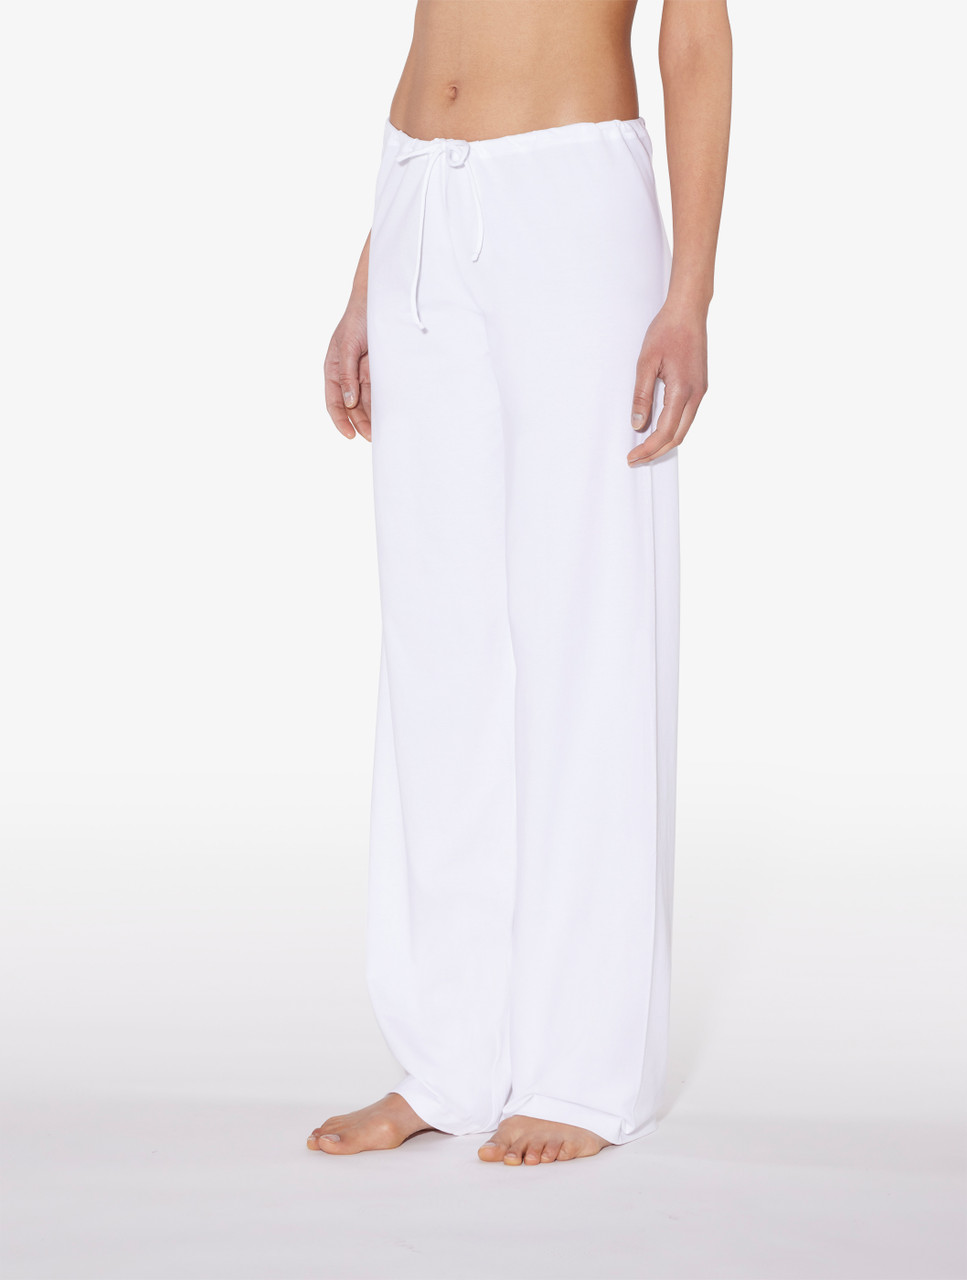 White cotton trousers - La Perla - Global